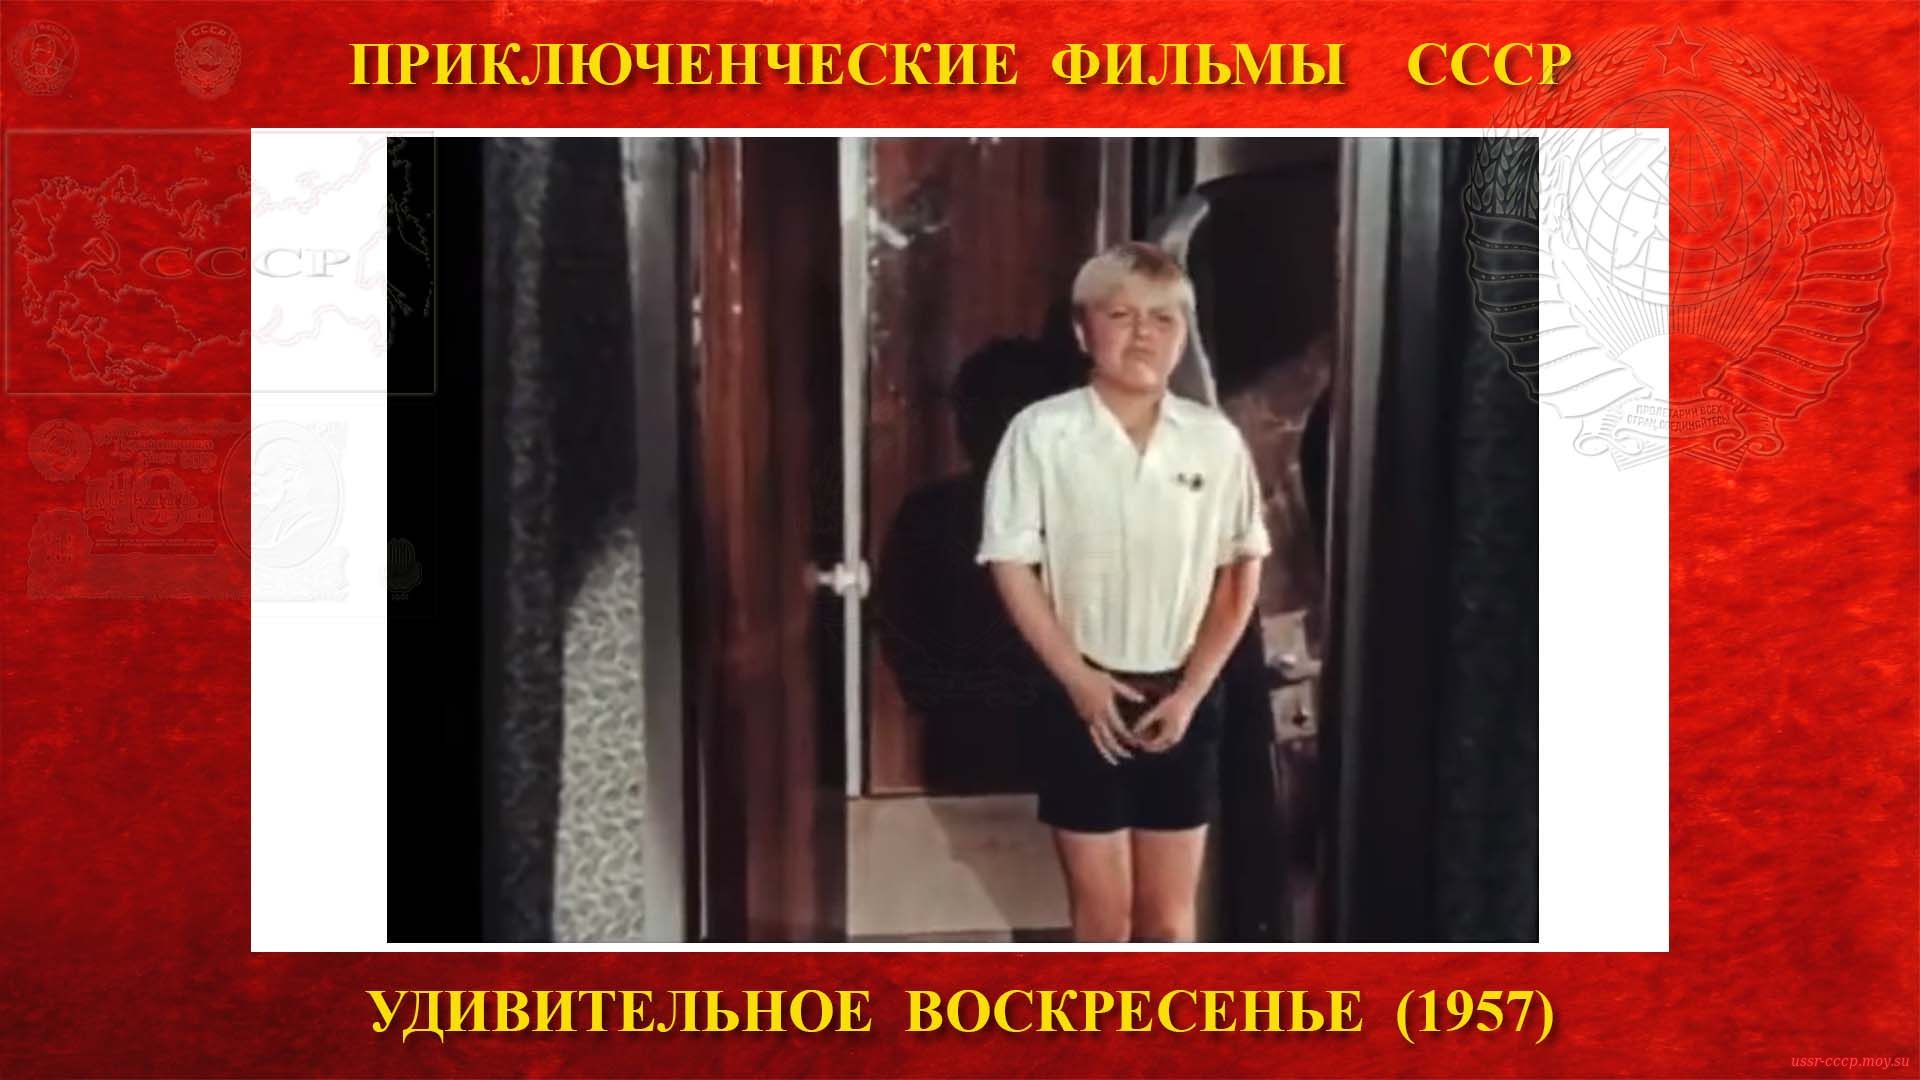 В этот момент Пепичеку понадобилось в туалет, а потом он не смог открыть дверь, и в это время началась посадка на самолёт Ту-104 СССР-Л5437.